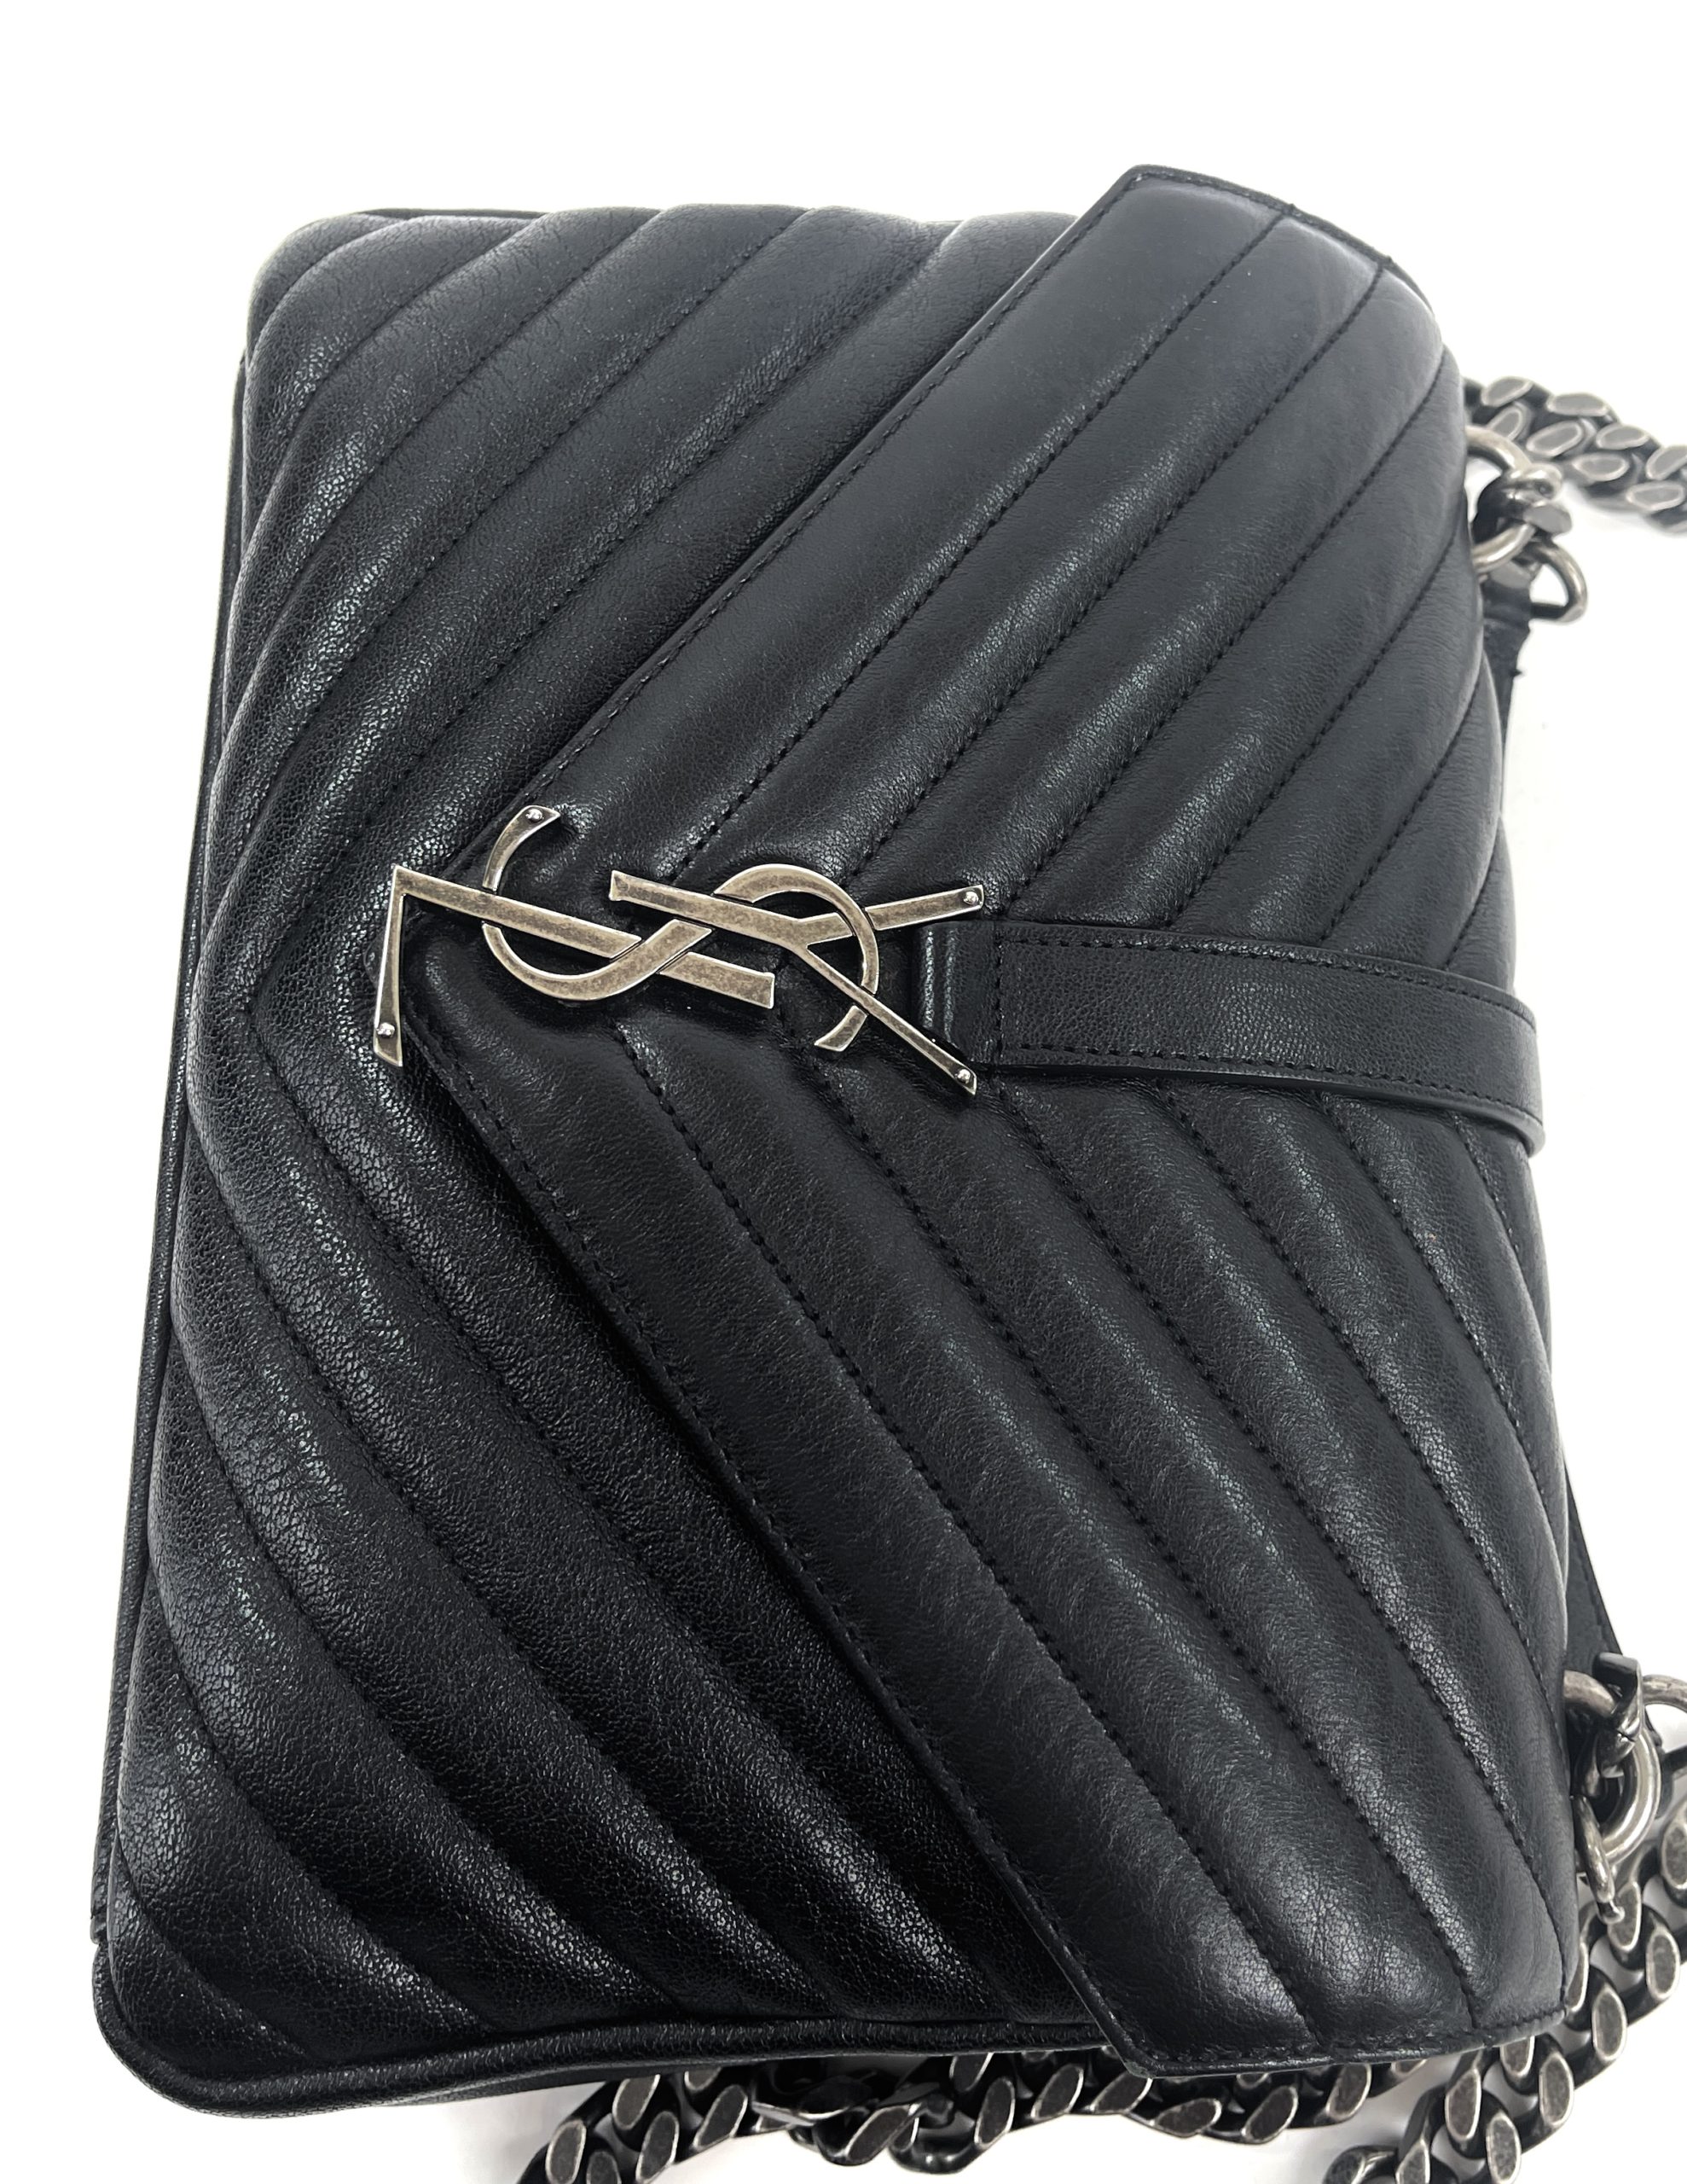 SAINT LAURENT Medium College Quilted Leather Shoulder Bag Black